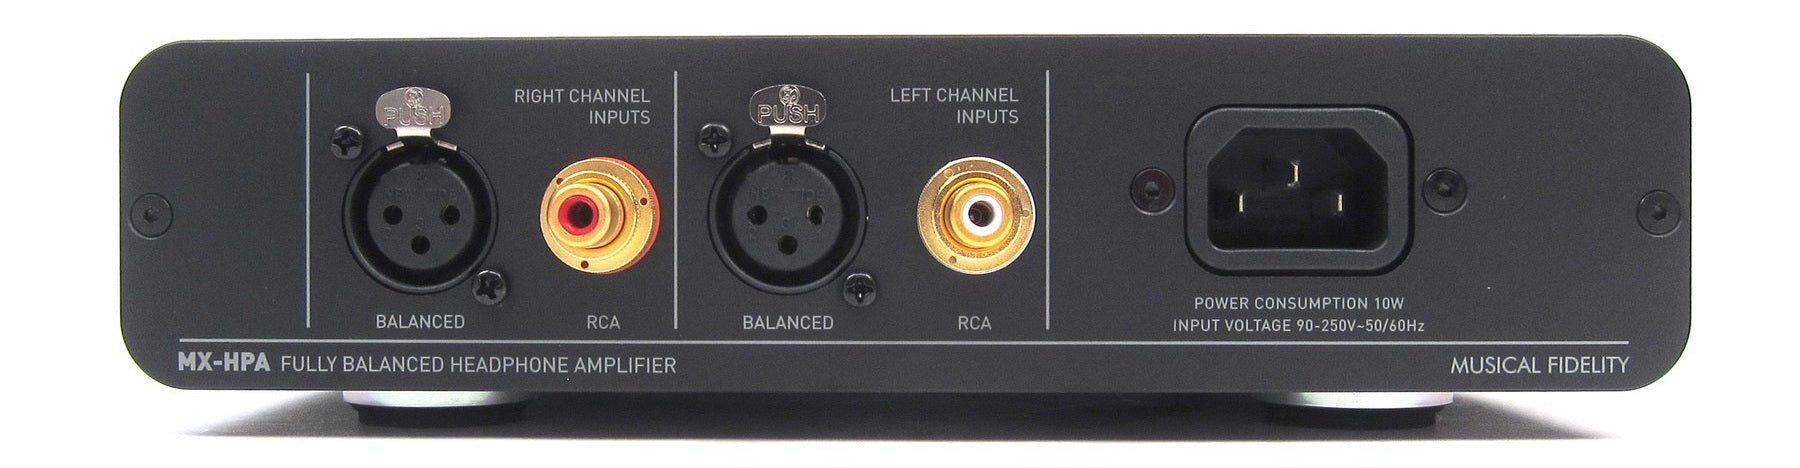 MUSICAL FIDELITY MXHPA - Amplificateur de casques d'écoute d'une puissance de 1.8 Watts/Canal, il est complet, performant et d'ores et déjà pensé pour les supports numériques. Un élément qui viendra parachever toute composition audiophile haut de gamme!